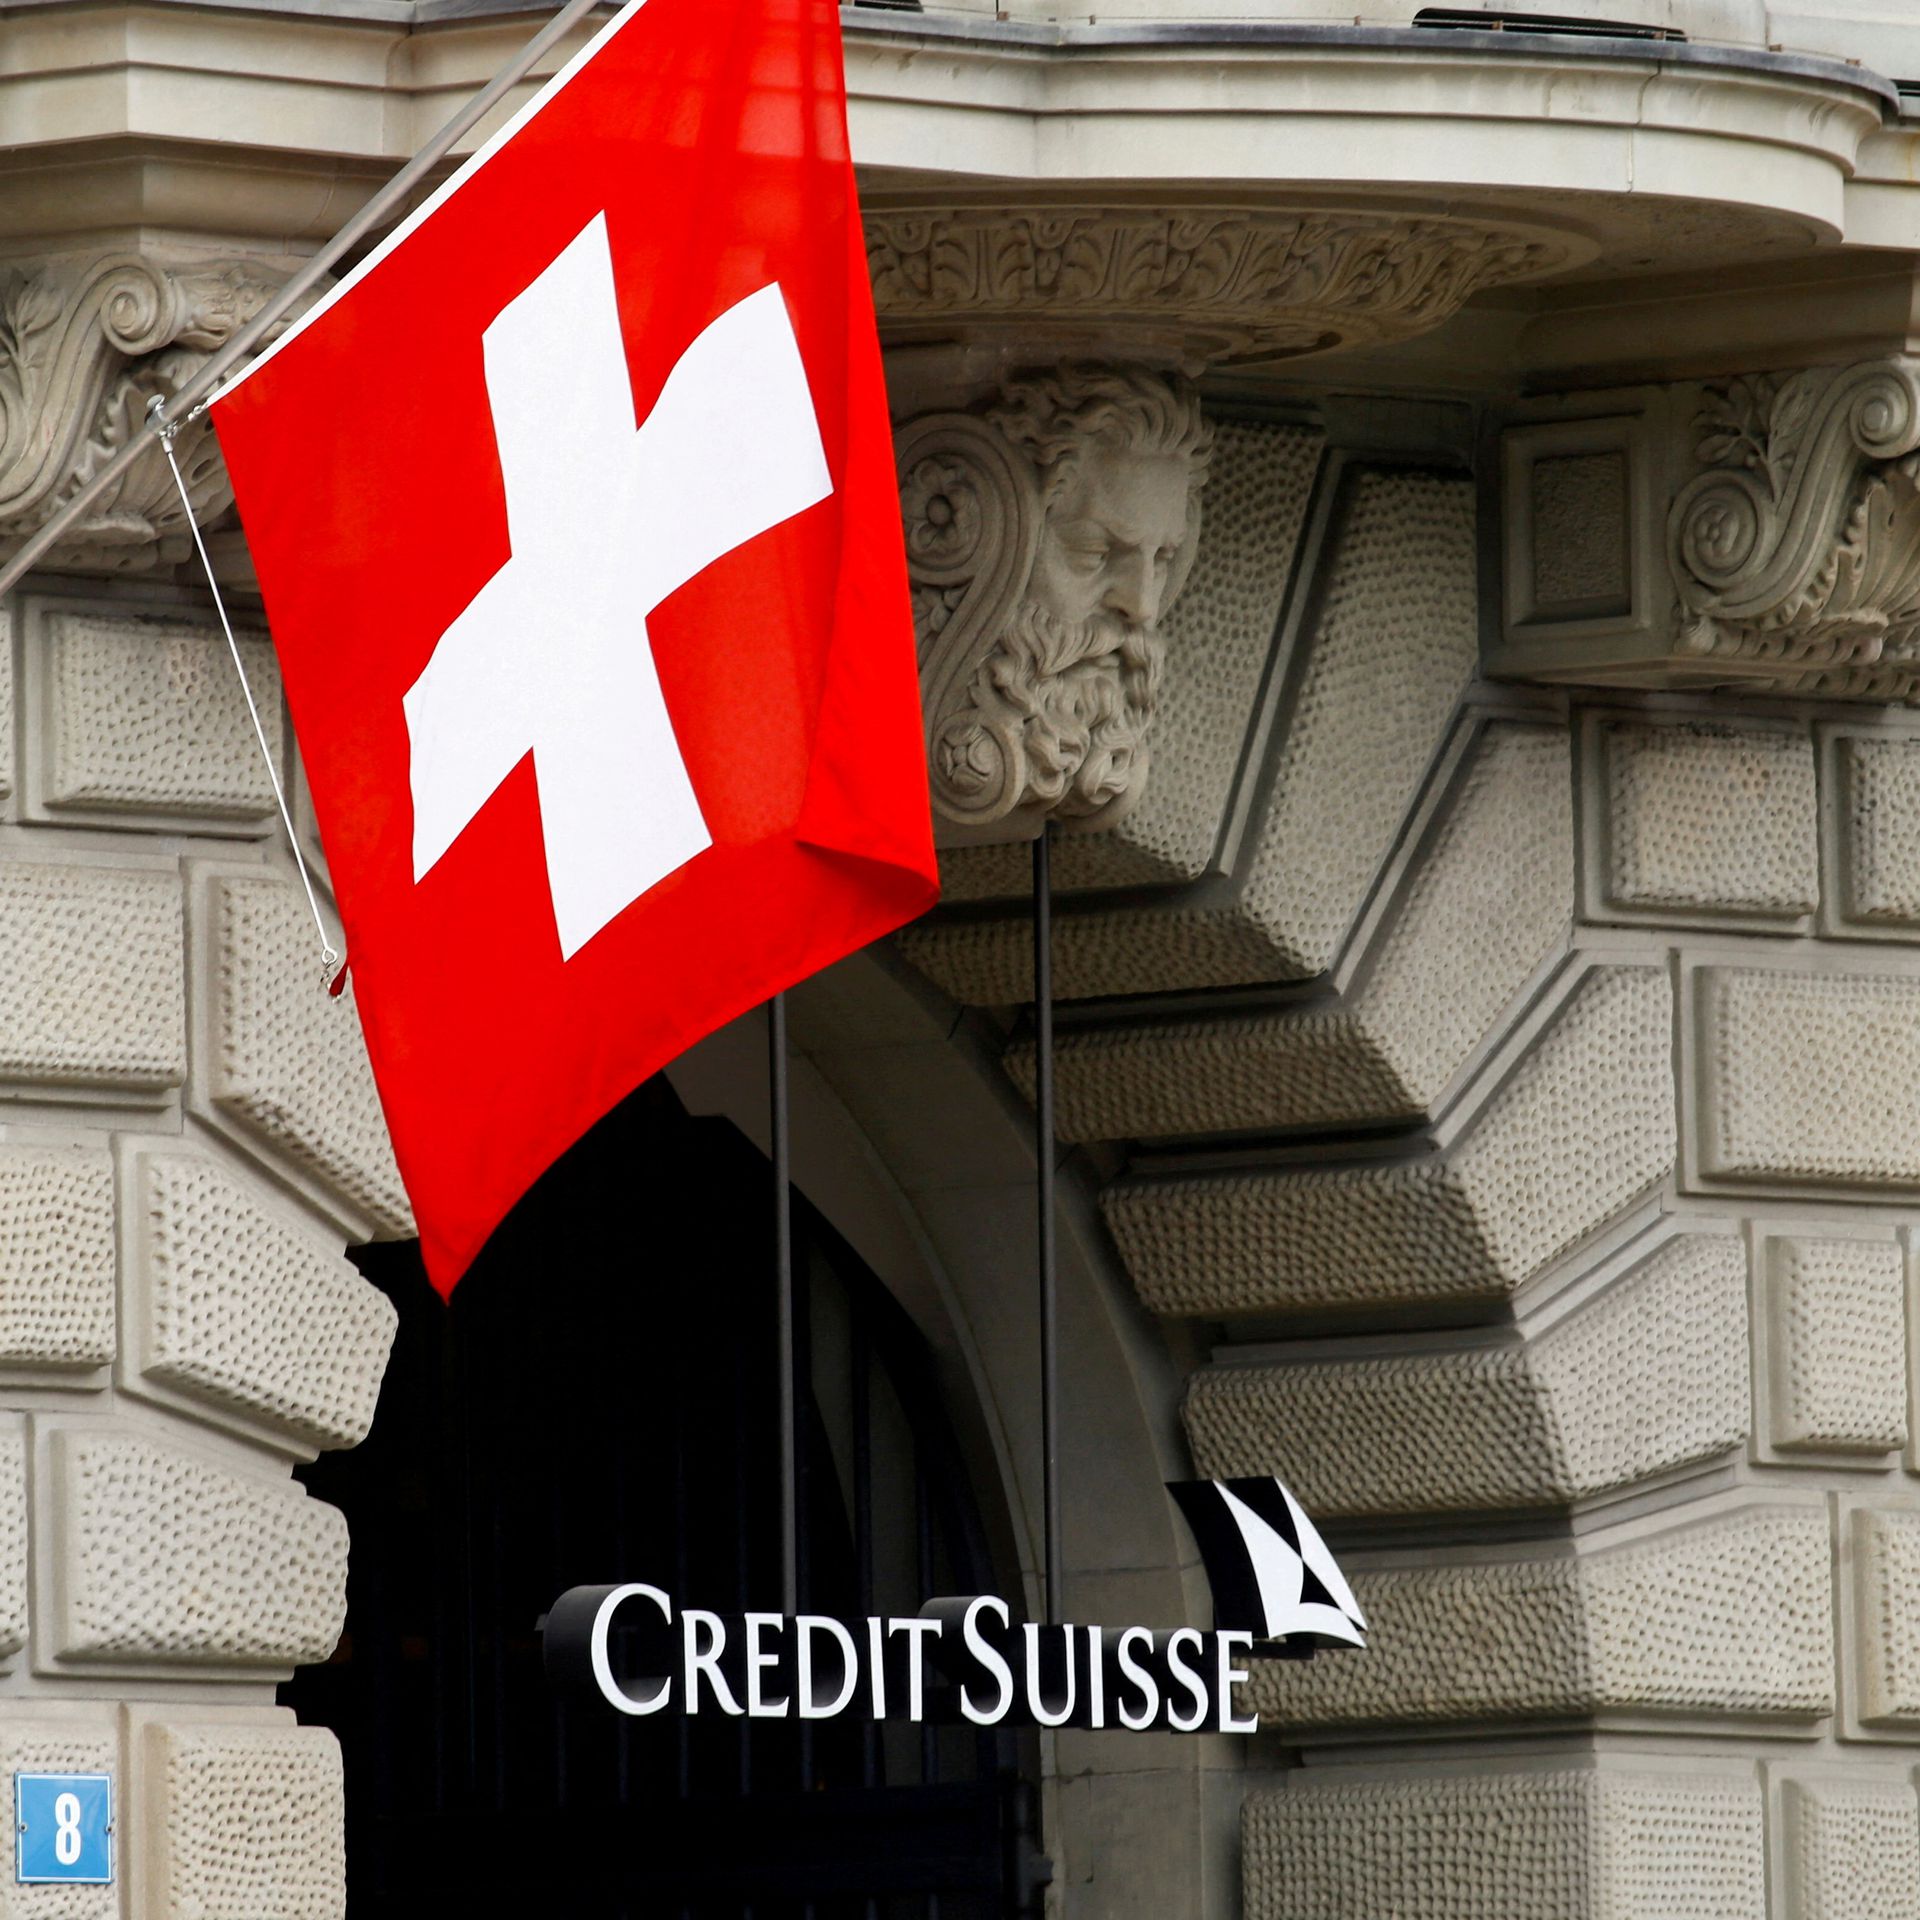 Cho tới hôm 2/10, Credit Suisse Group AG (CSGN.S) chứng kiến cổ phiếu của mình trượt tới 11,5% và trái phiếu của ngân hàng này đạt mức thấp kỷ lục. Tình huống này đã khiến cơ quan quản lý Thụy Sĩ FINMA và Ngân hàng Anh ở London, theo dõi những gì đang xảy ra và hợp tác chặt chẽ với nhau, một nguồn thạo tin cho biết.